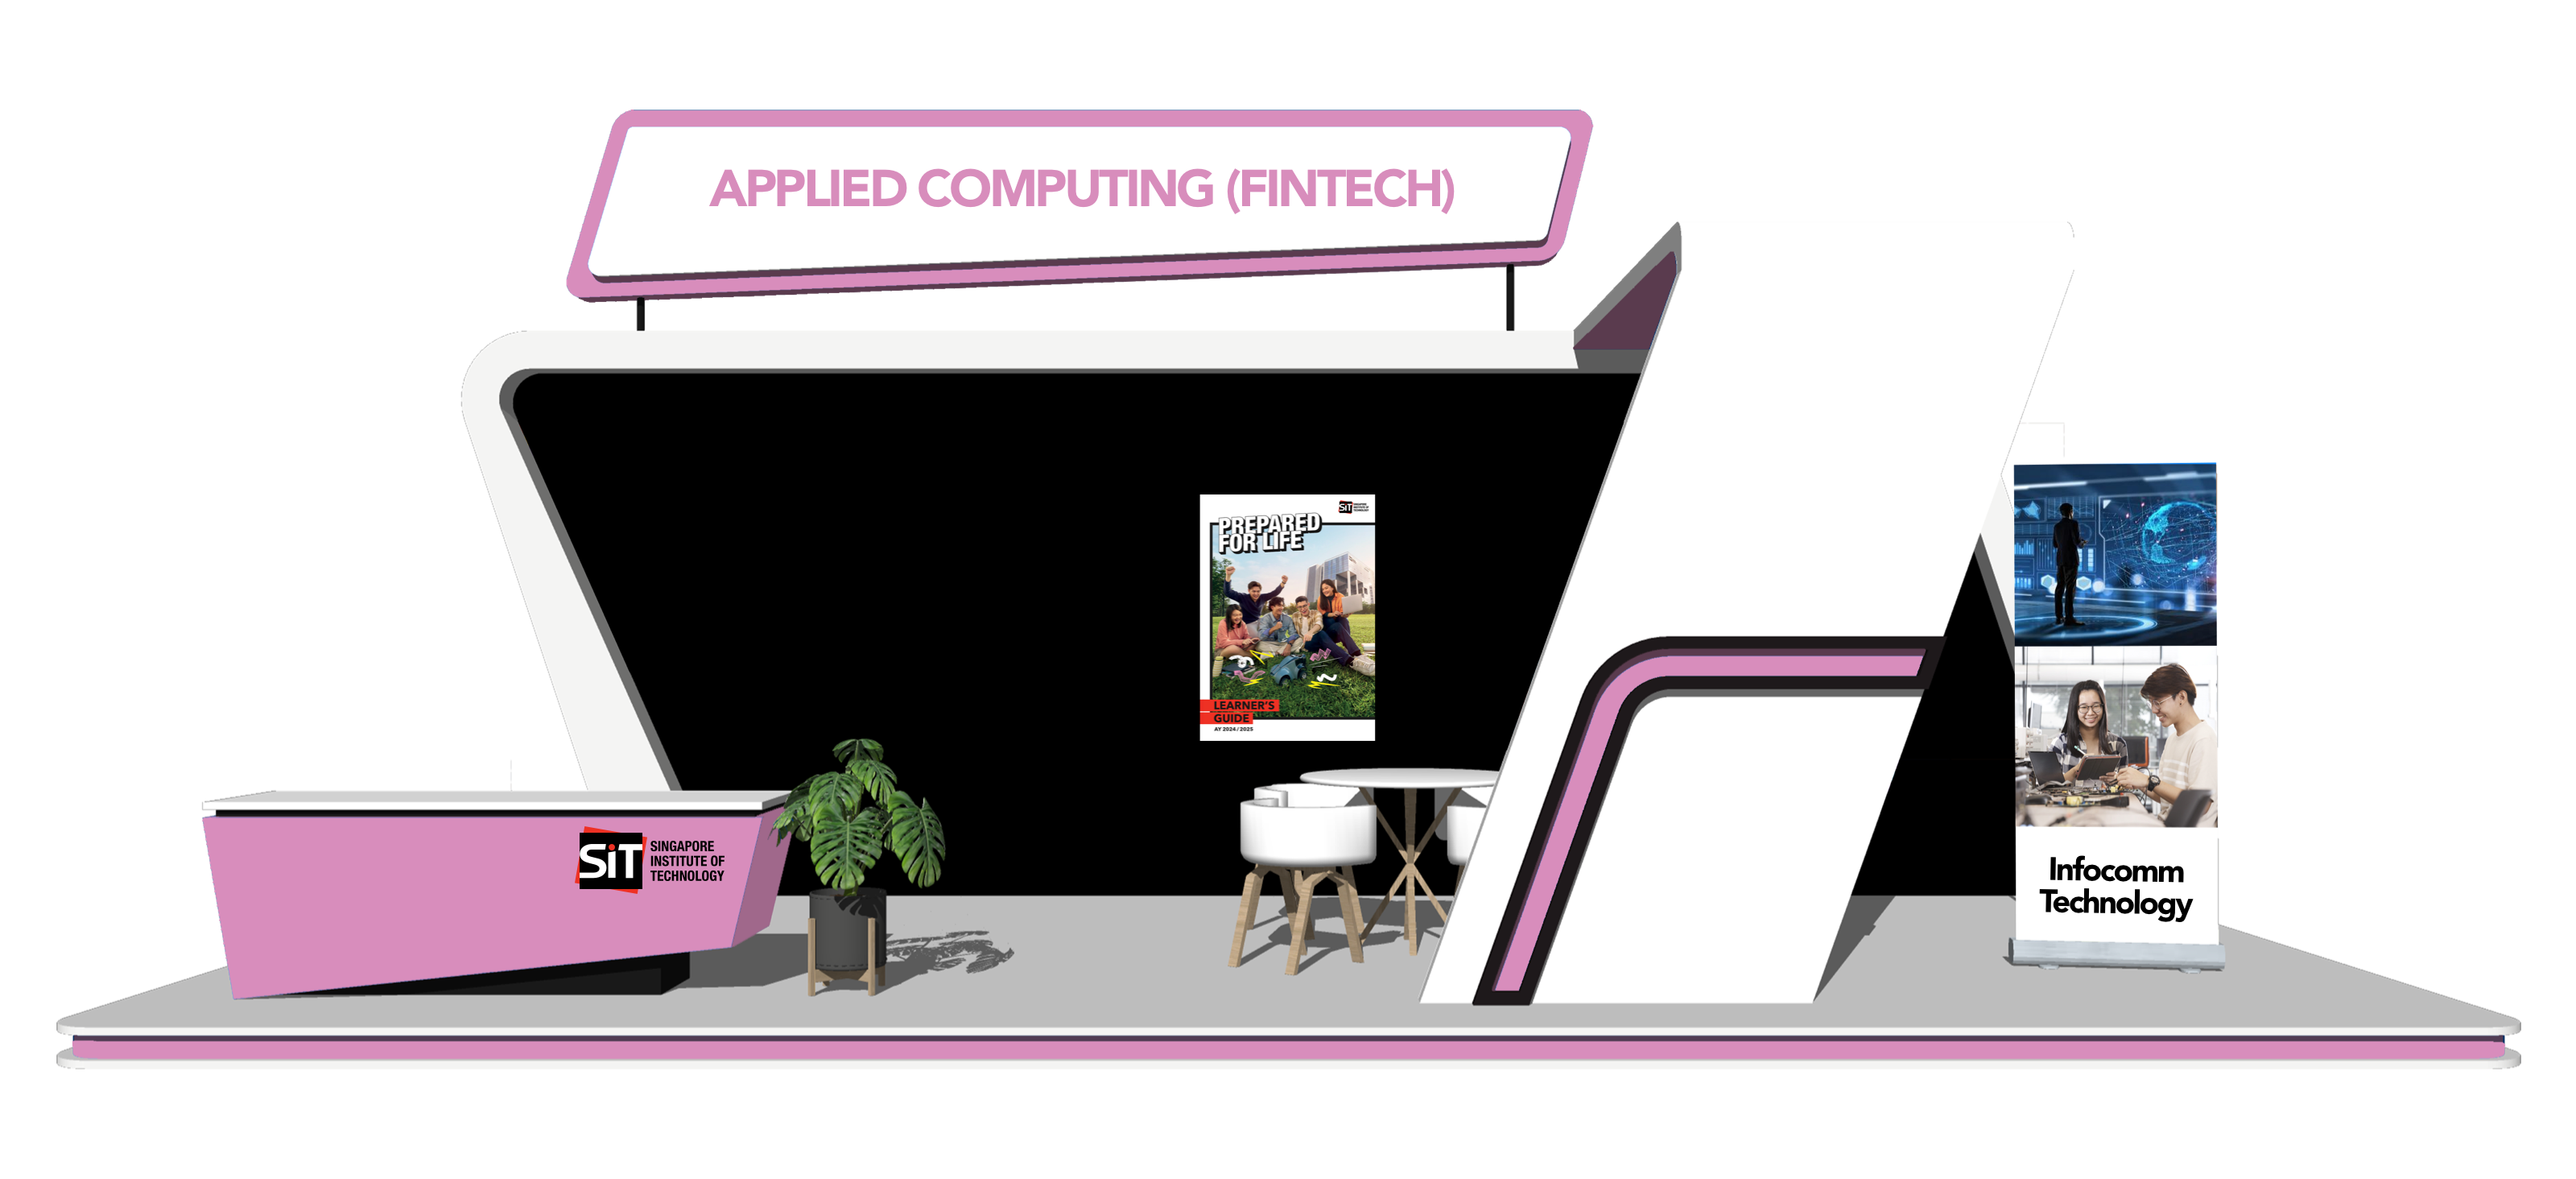 Applied Computing (Fintech)